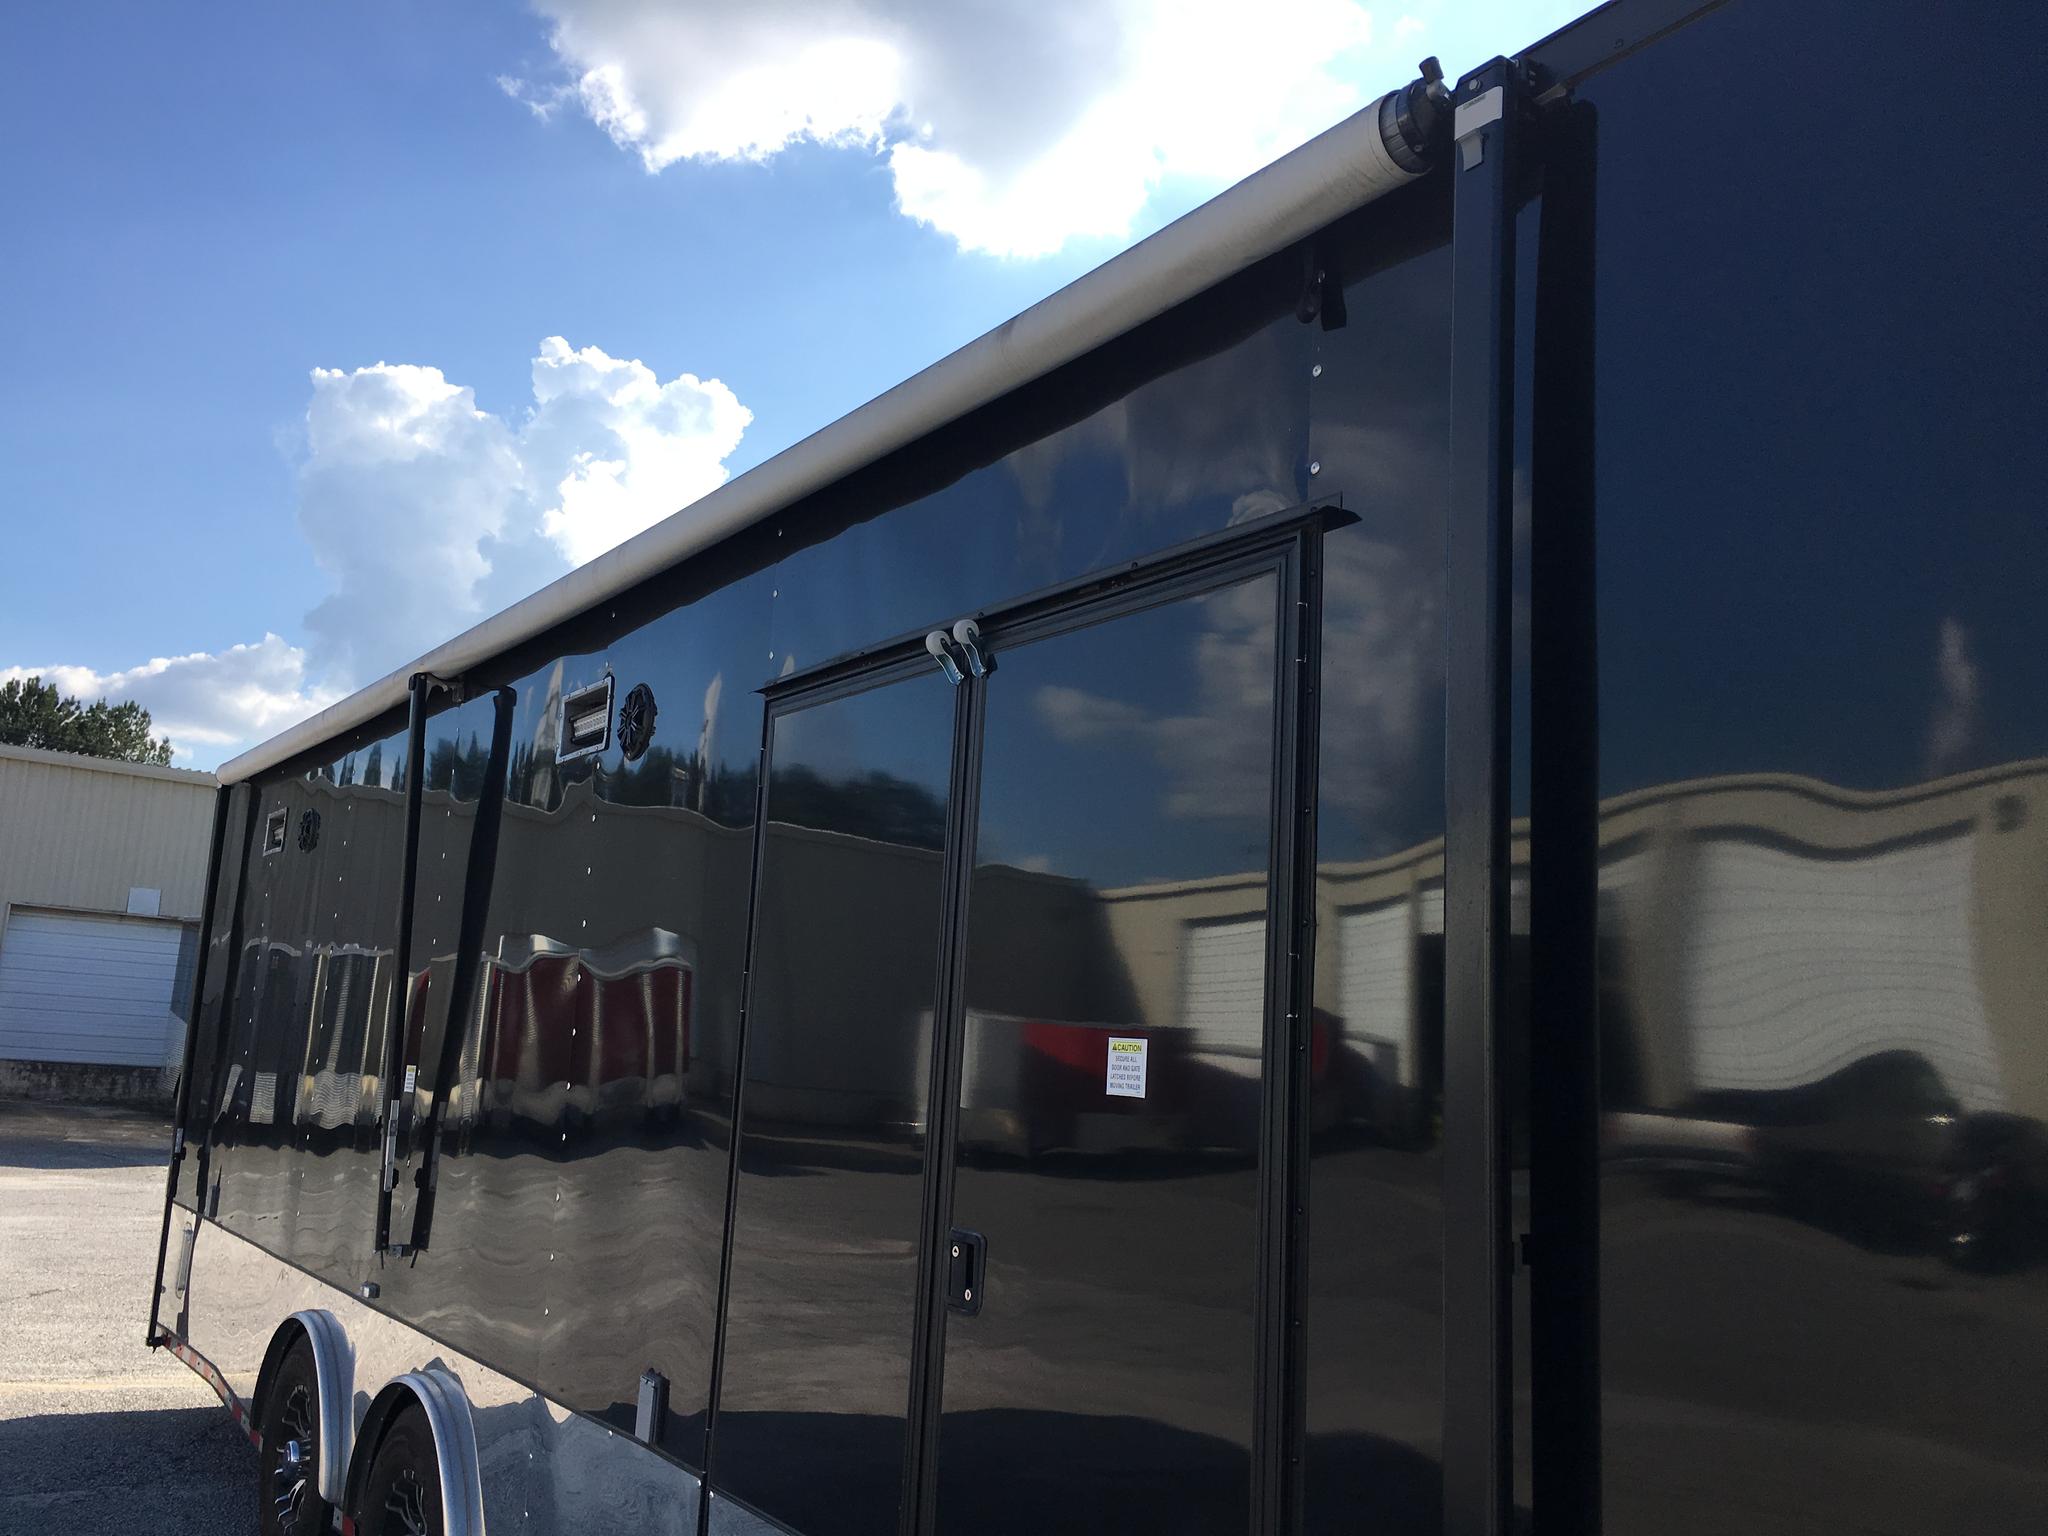 44 ft travel trailer